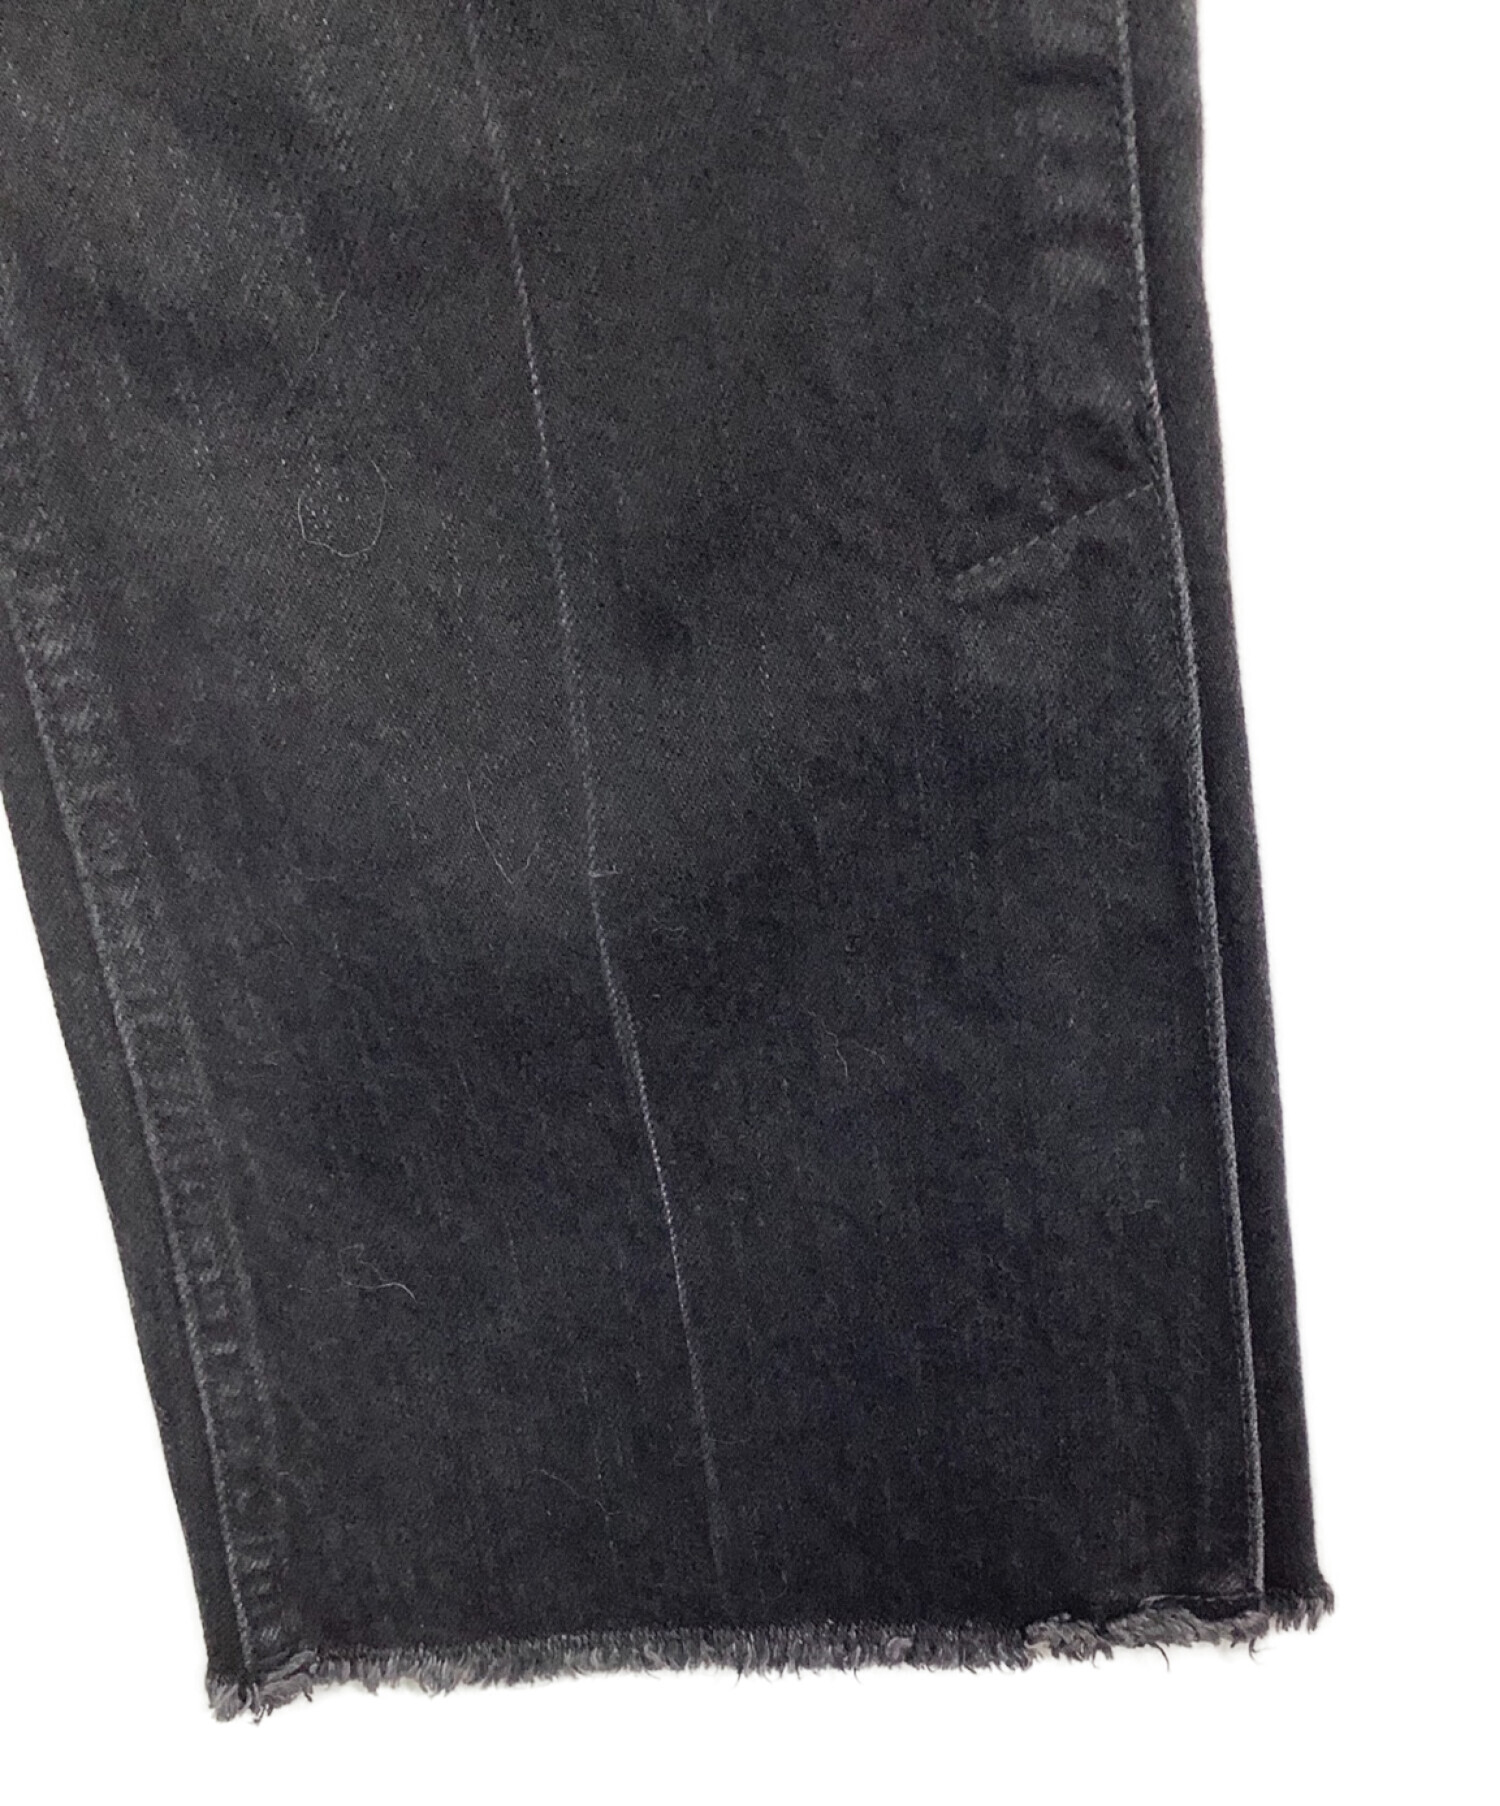 PHEENY (フィーニー) フレアデニムパンツ ブラック サイズ:27 未使用品